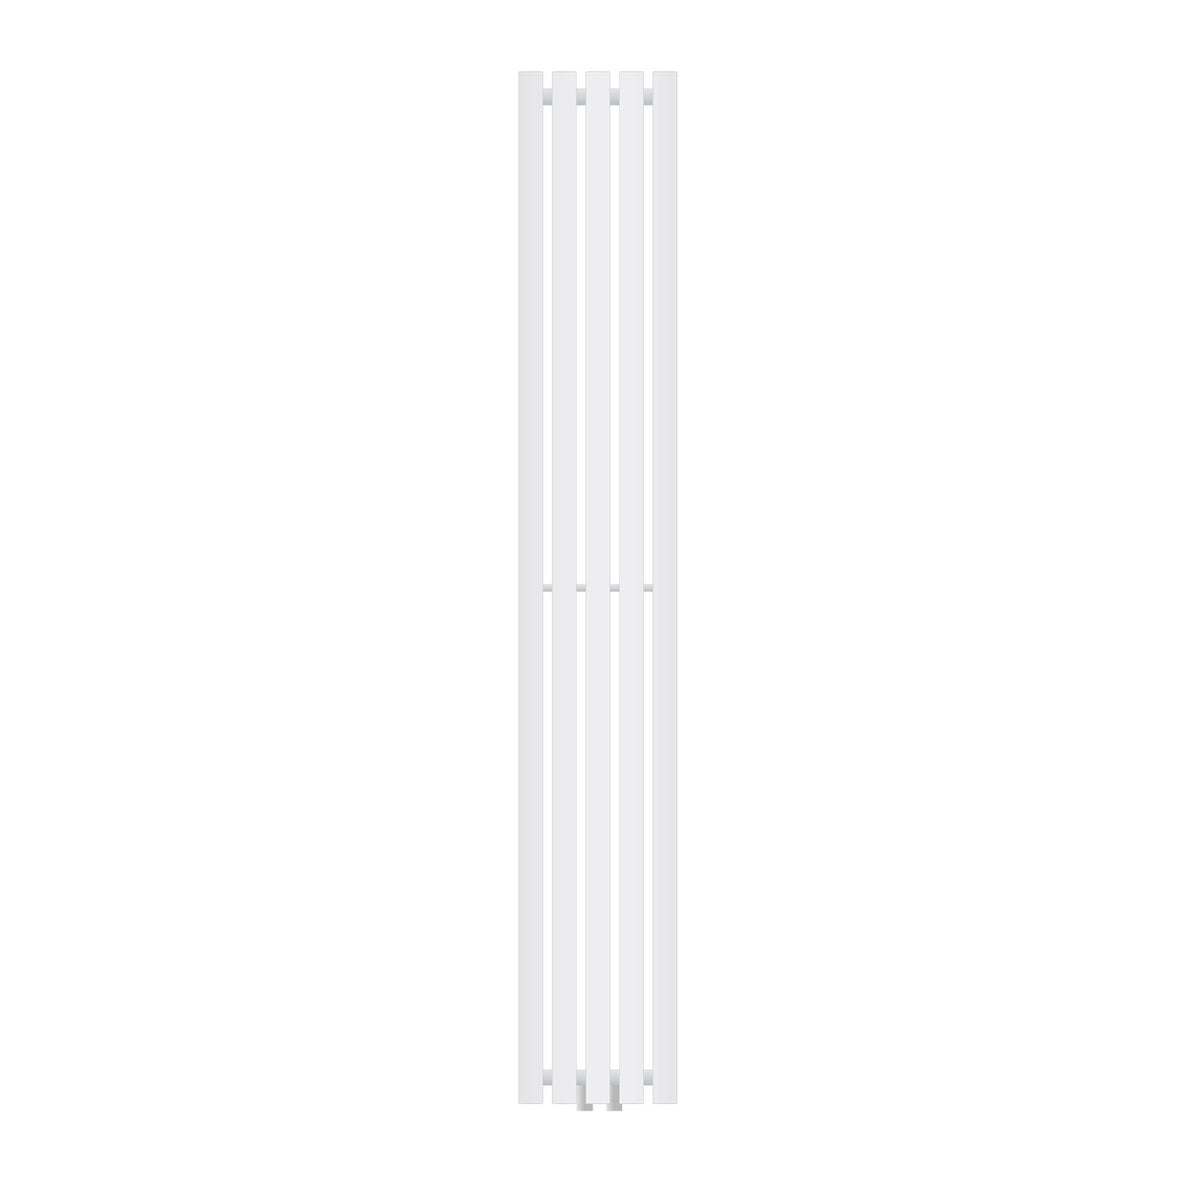 LuxeBath Designheizkörper Stella 1800 x 260 mm, Weiß, Paneelheizkörper Mittelanschluss, Einlagig, Flach, Vertikal, Badheizkörper Röhrenheizkörper Flachheizkörper Badezimmer Heizung Bad Wandheizung